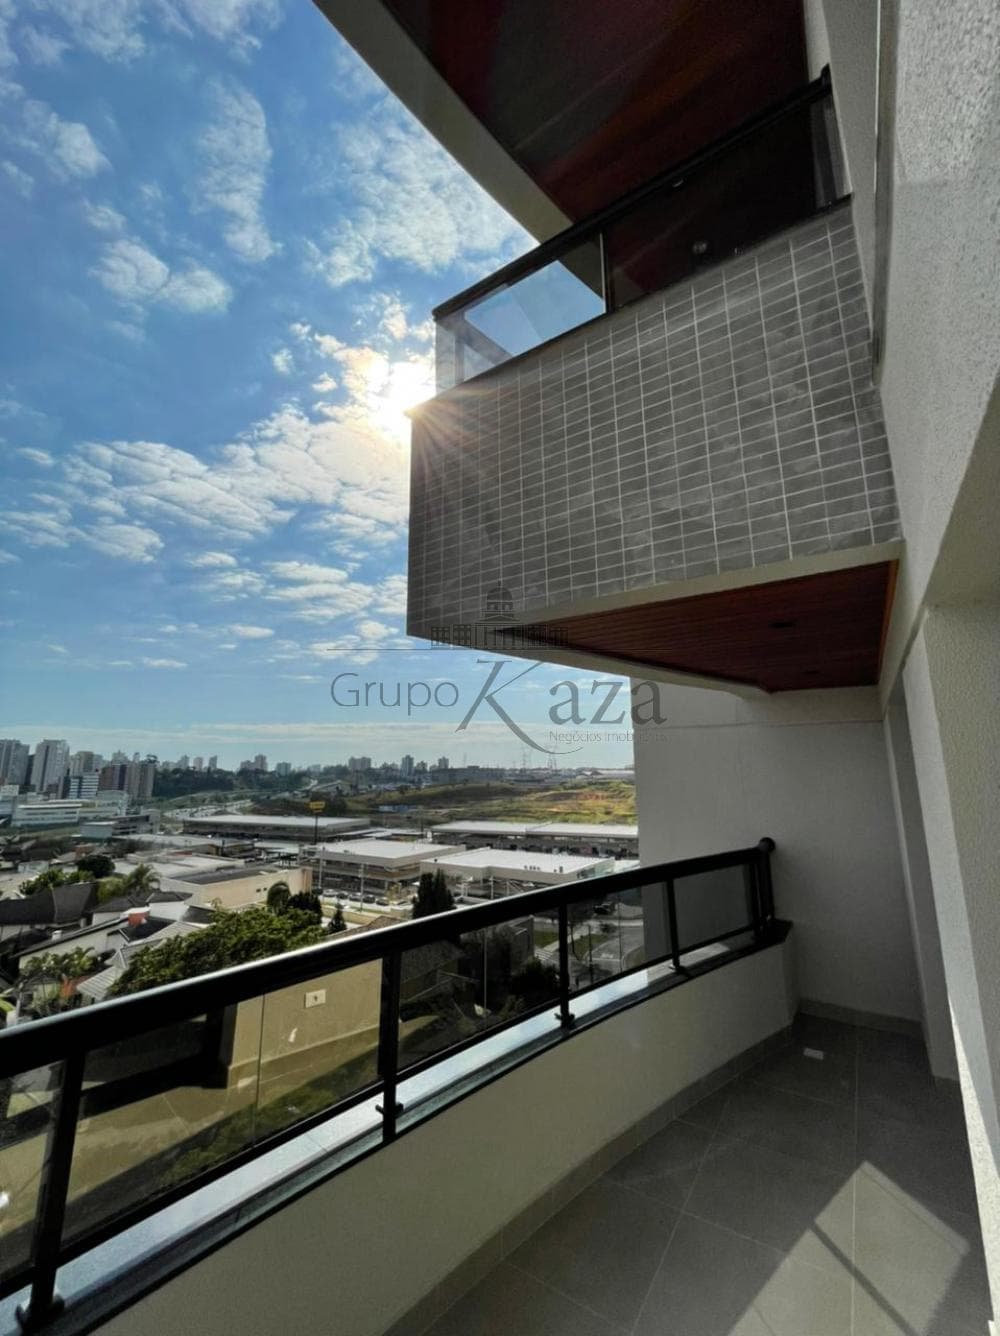 Foto 4 de Apartamento Duplex em Parque Residencial Aquarius, São José dos Campos - imagem 4